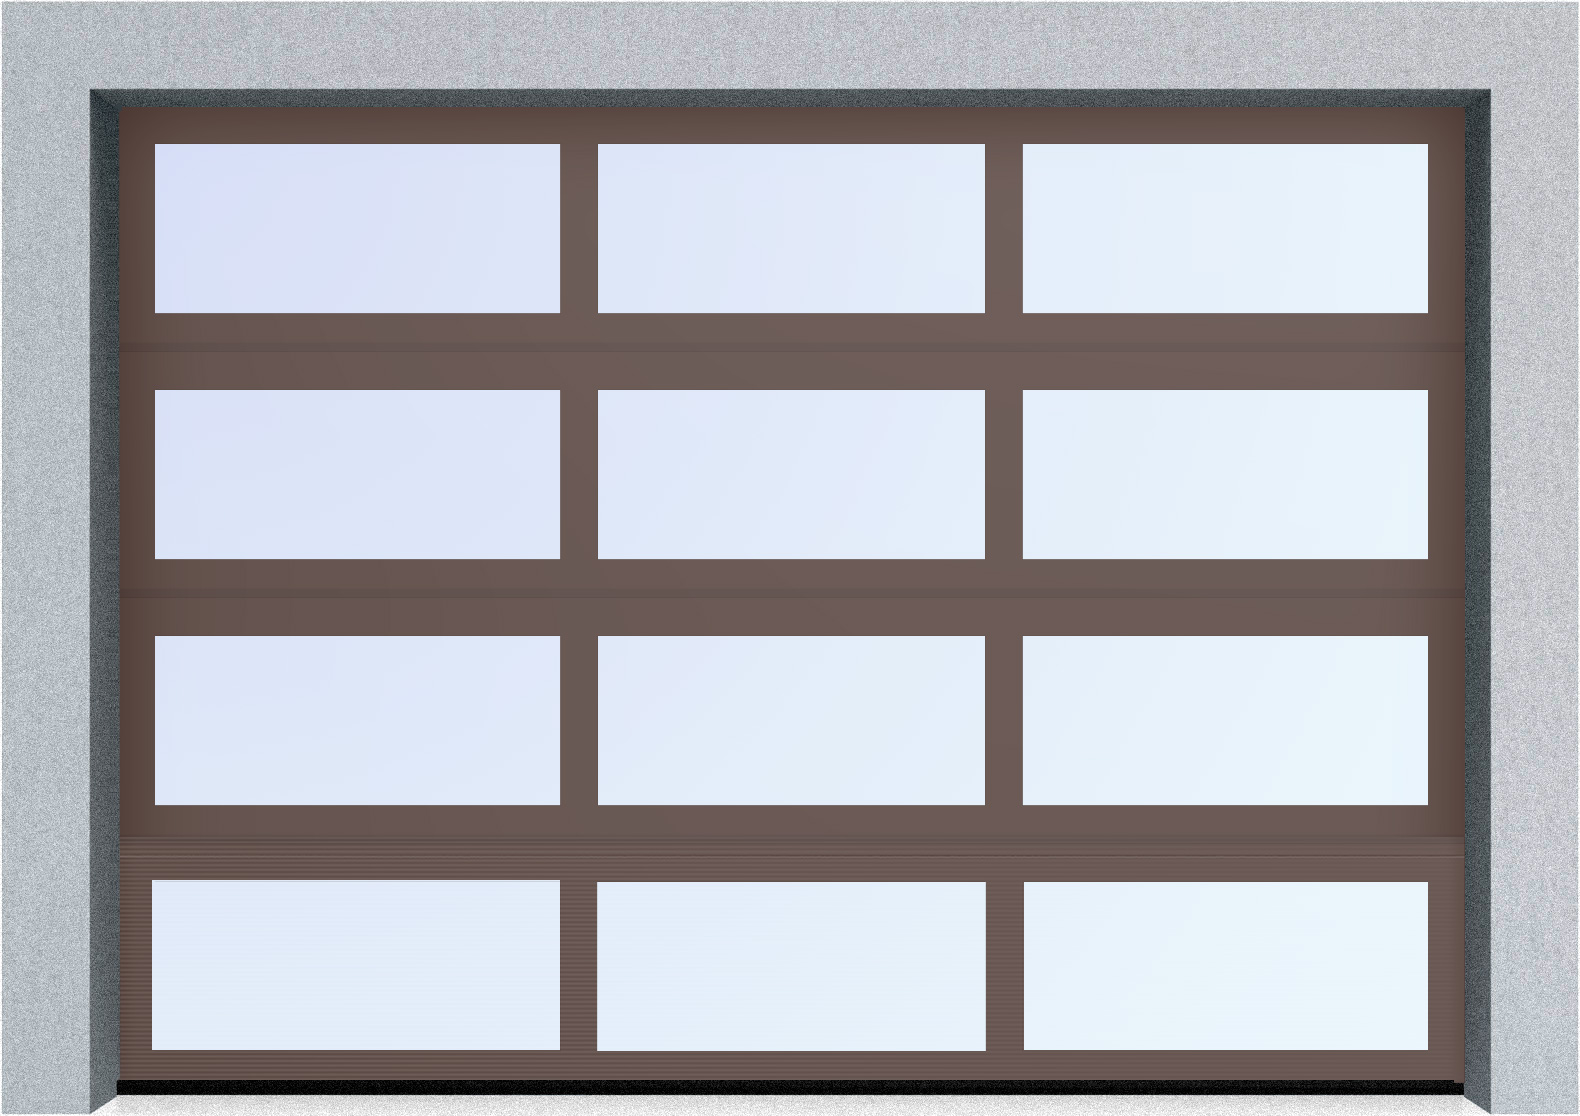  Секционные панорамные ворота серии AluTrend (АЛП) 2375х2500 нижняя панель стандартные цвета, фото 7 